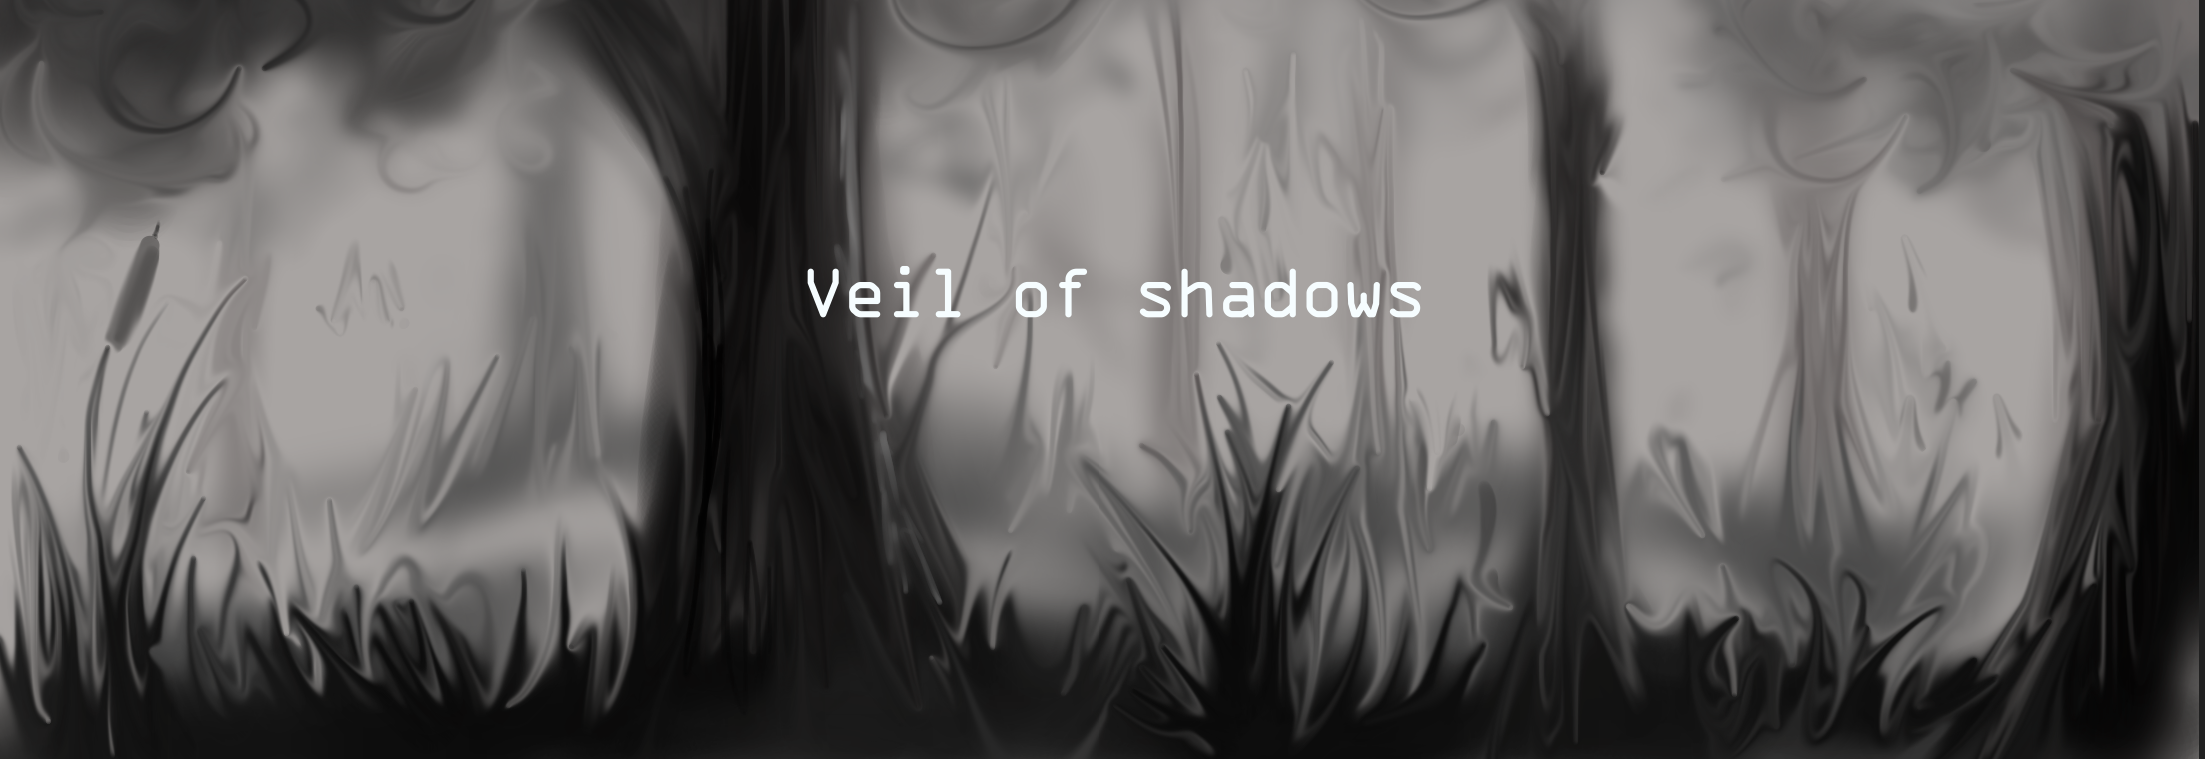 Veil of shadows